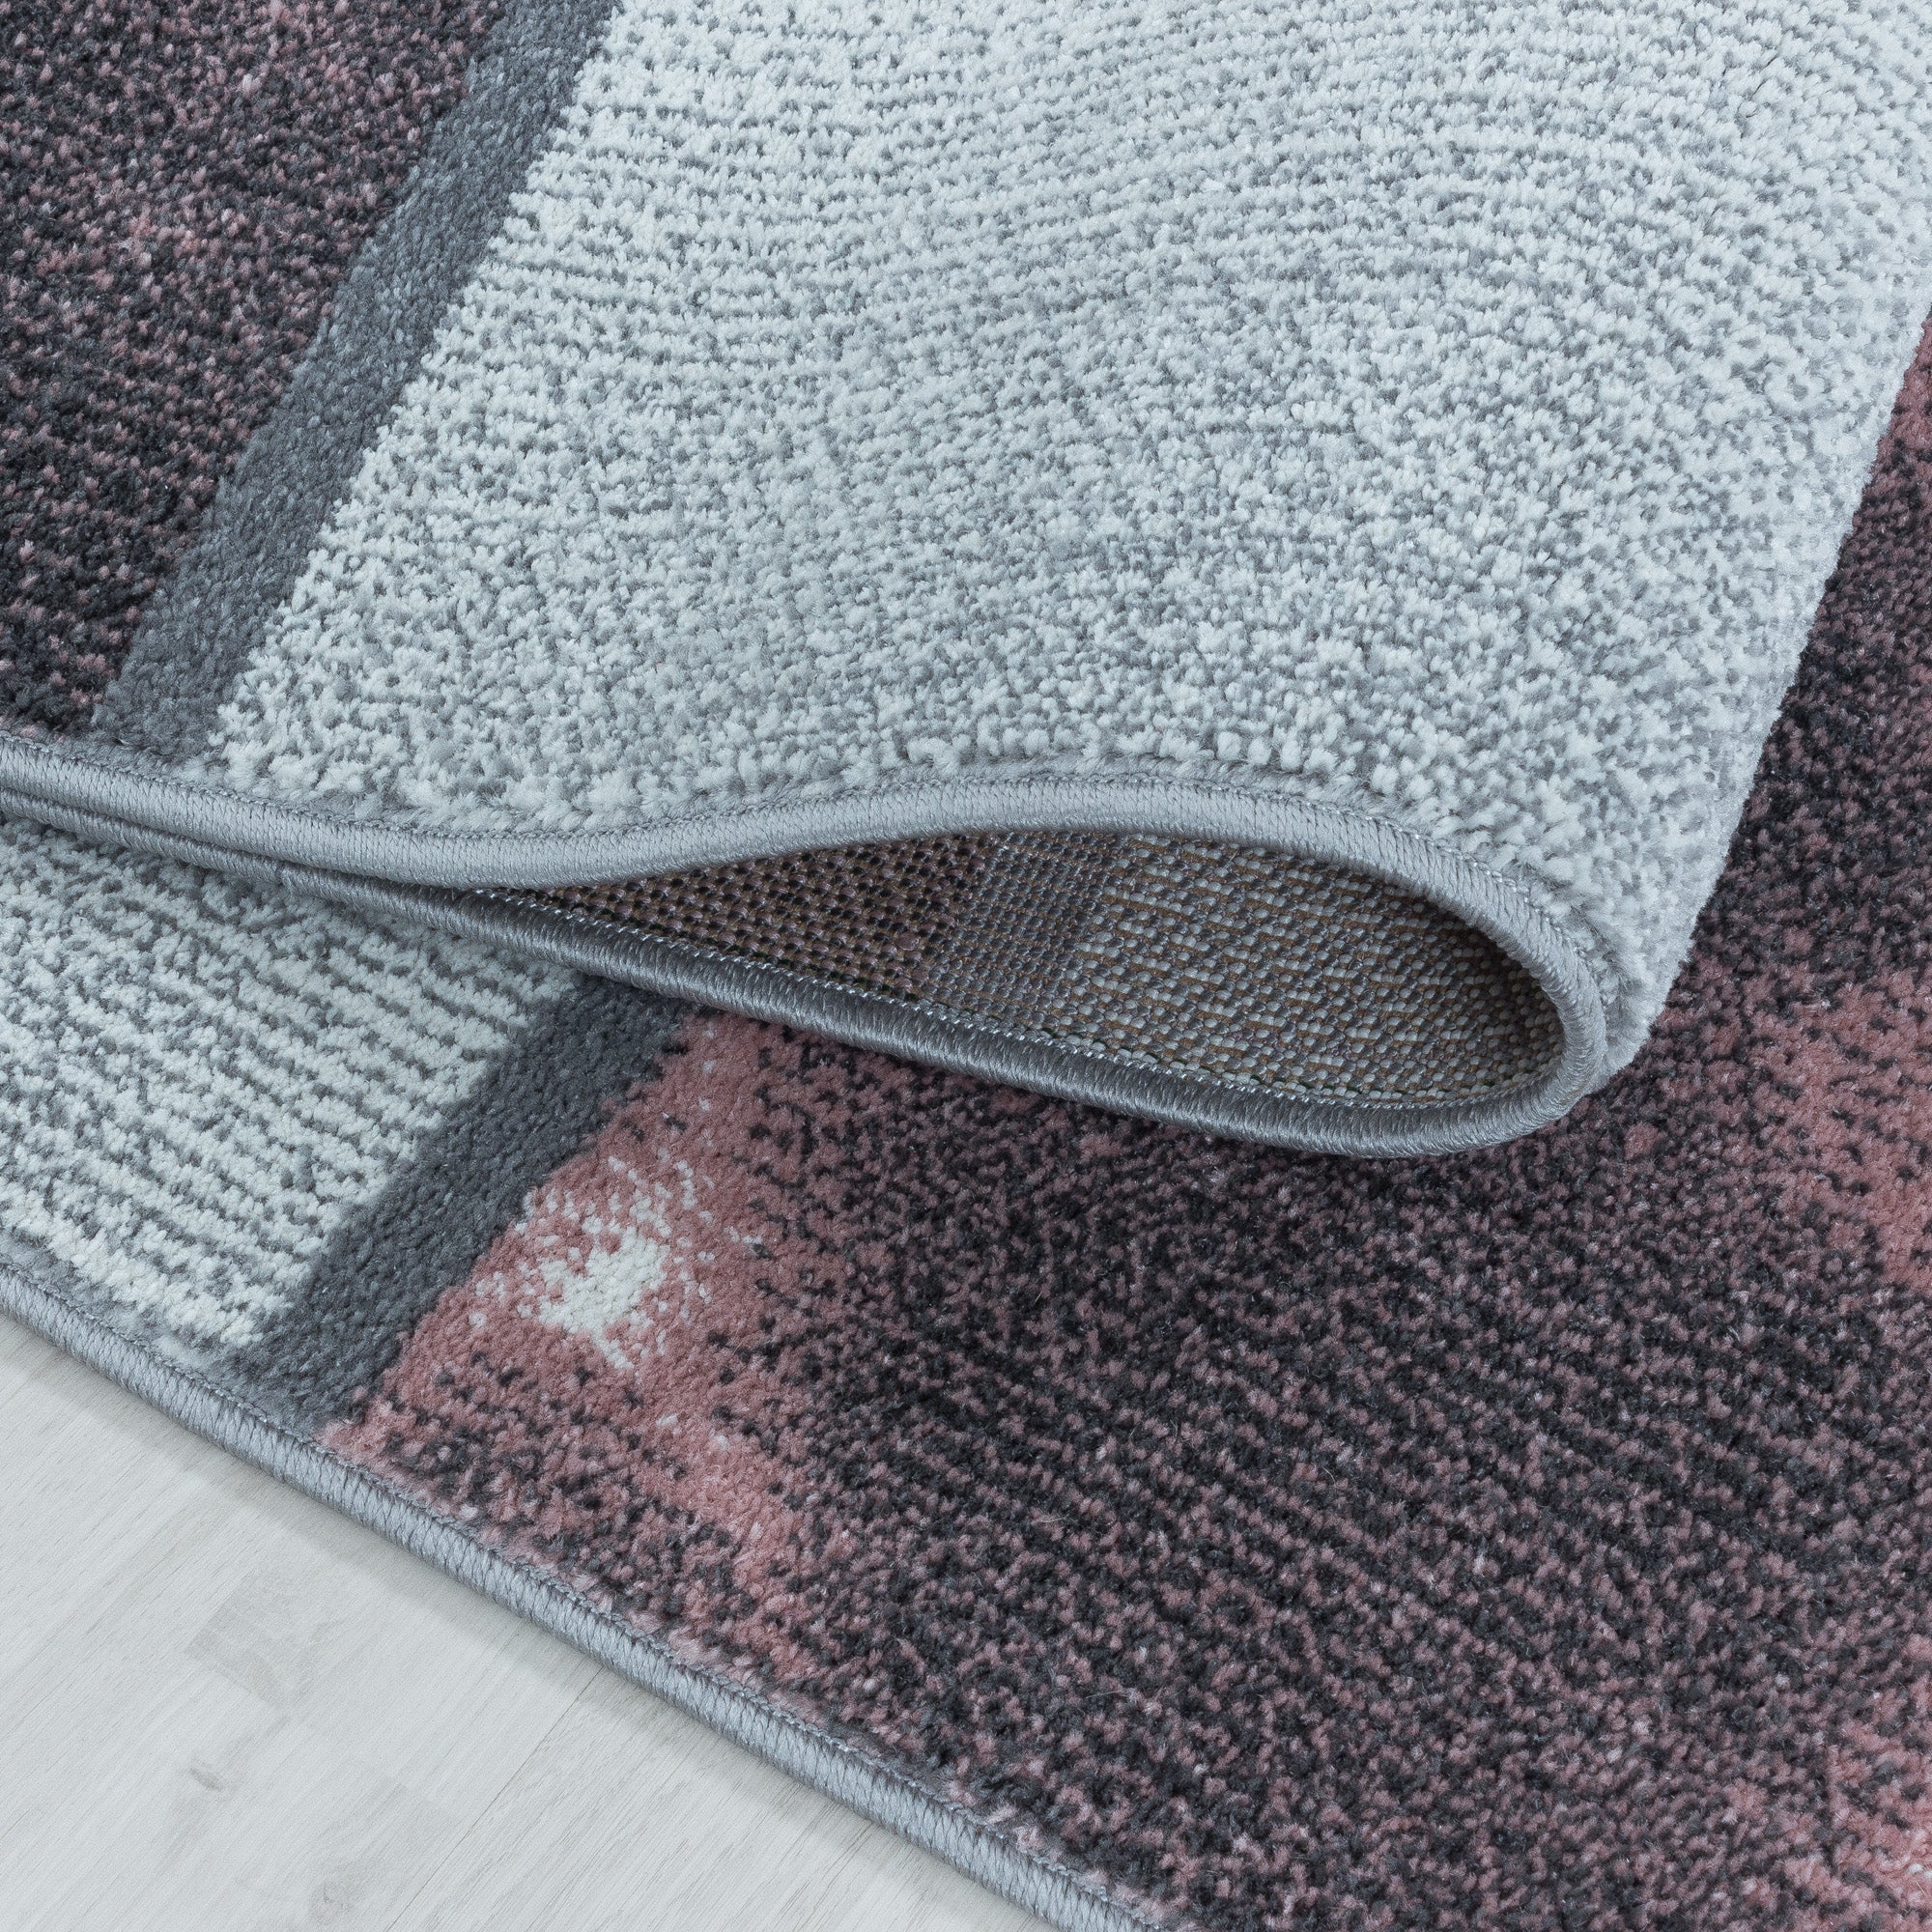 Kurzflor Teppich Rosa Grau Quadrat Muster Marmoriert Wohnzimmerteppich Weich